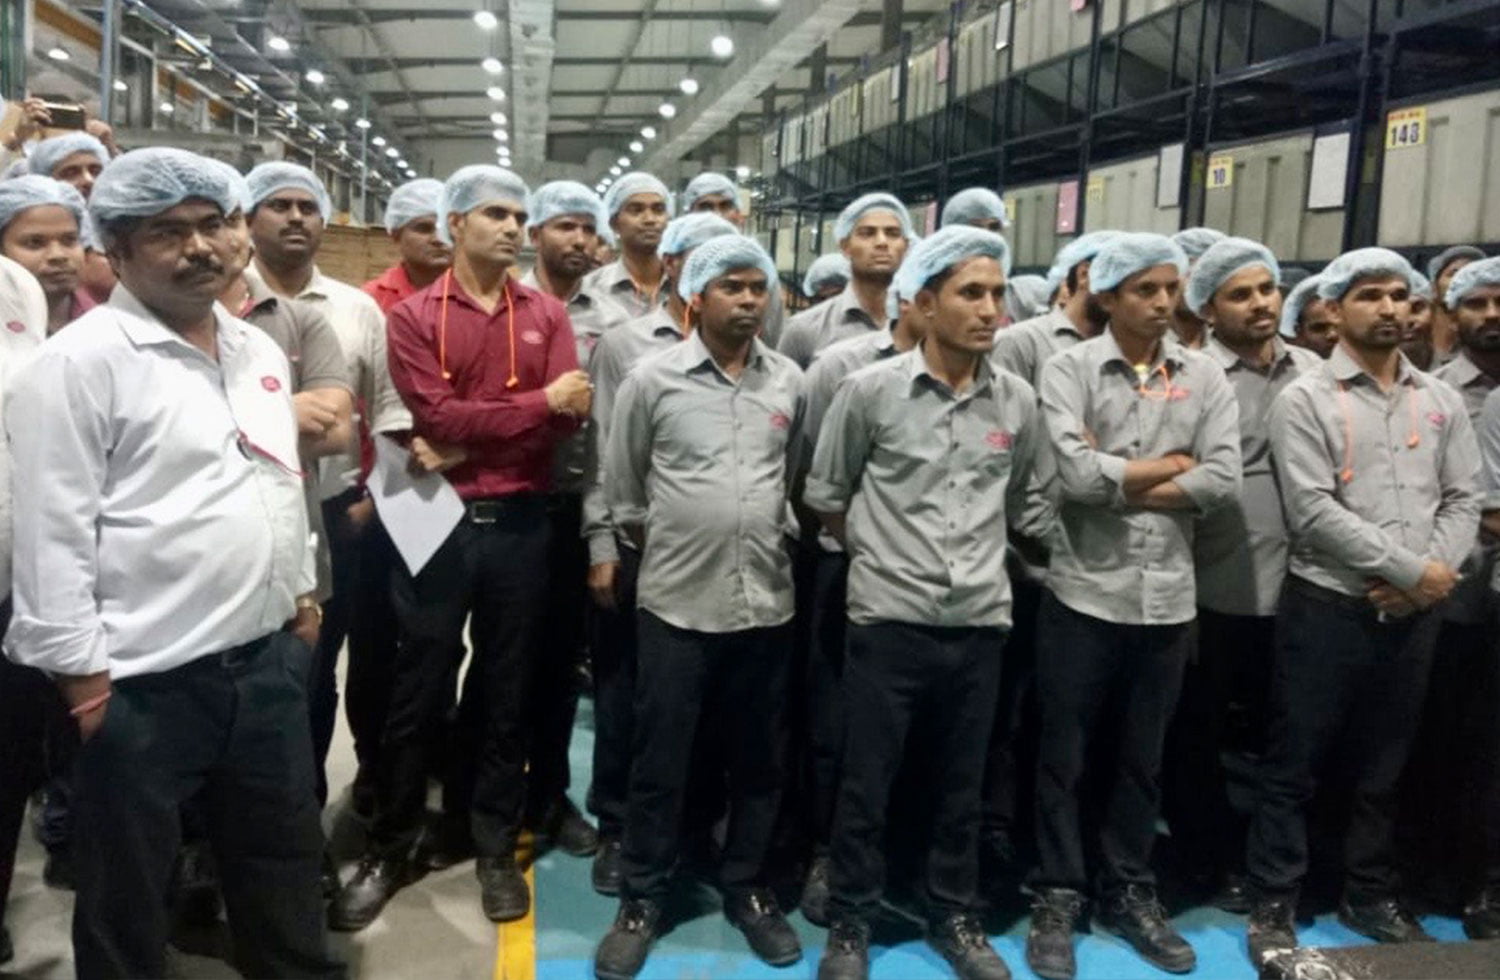 production record at the Jaipur plant - Batiendo record de producción en nuestra planta de India | Grupo Torrent